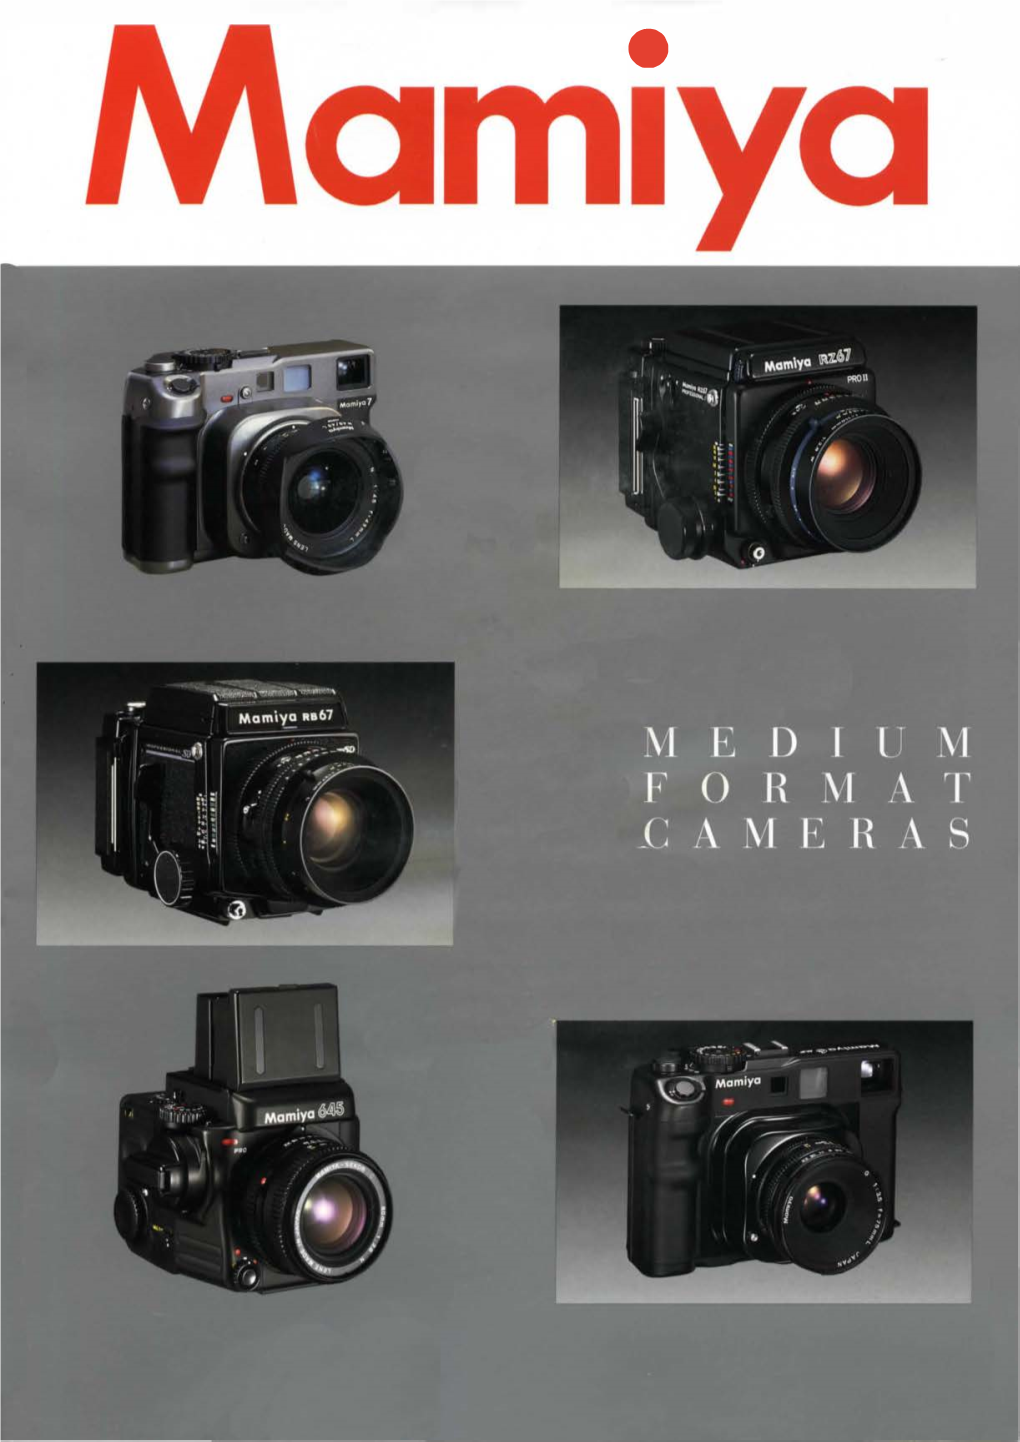 A History of Mamiya Medium Format Cameras